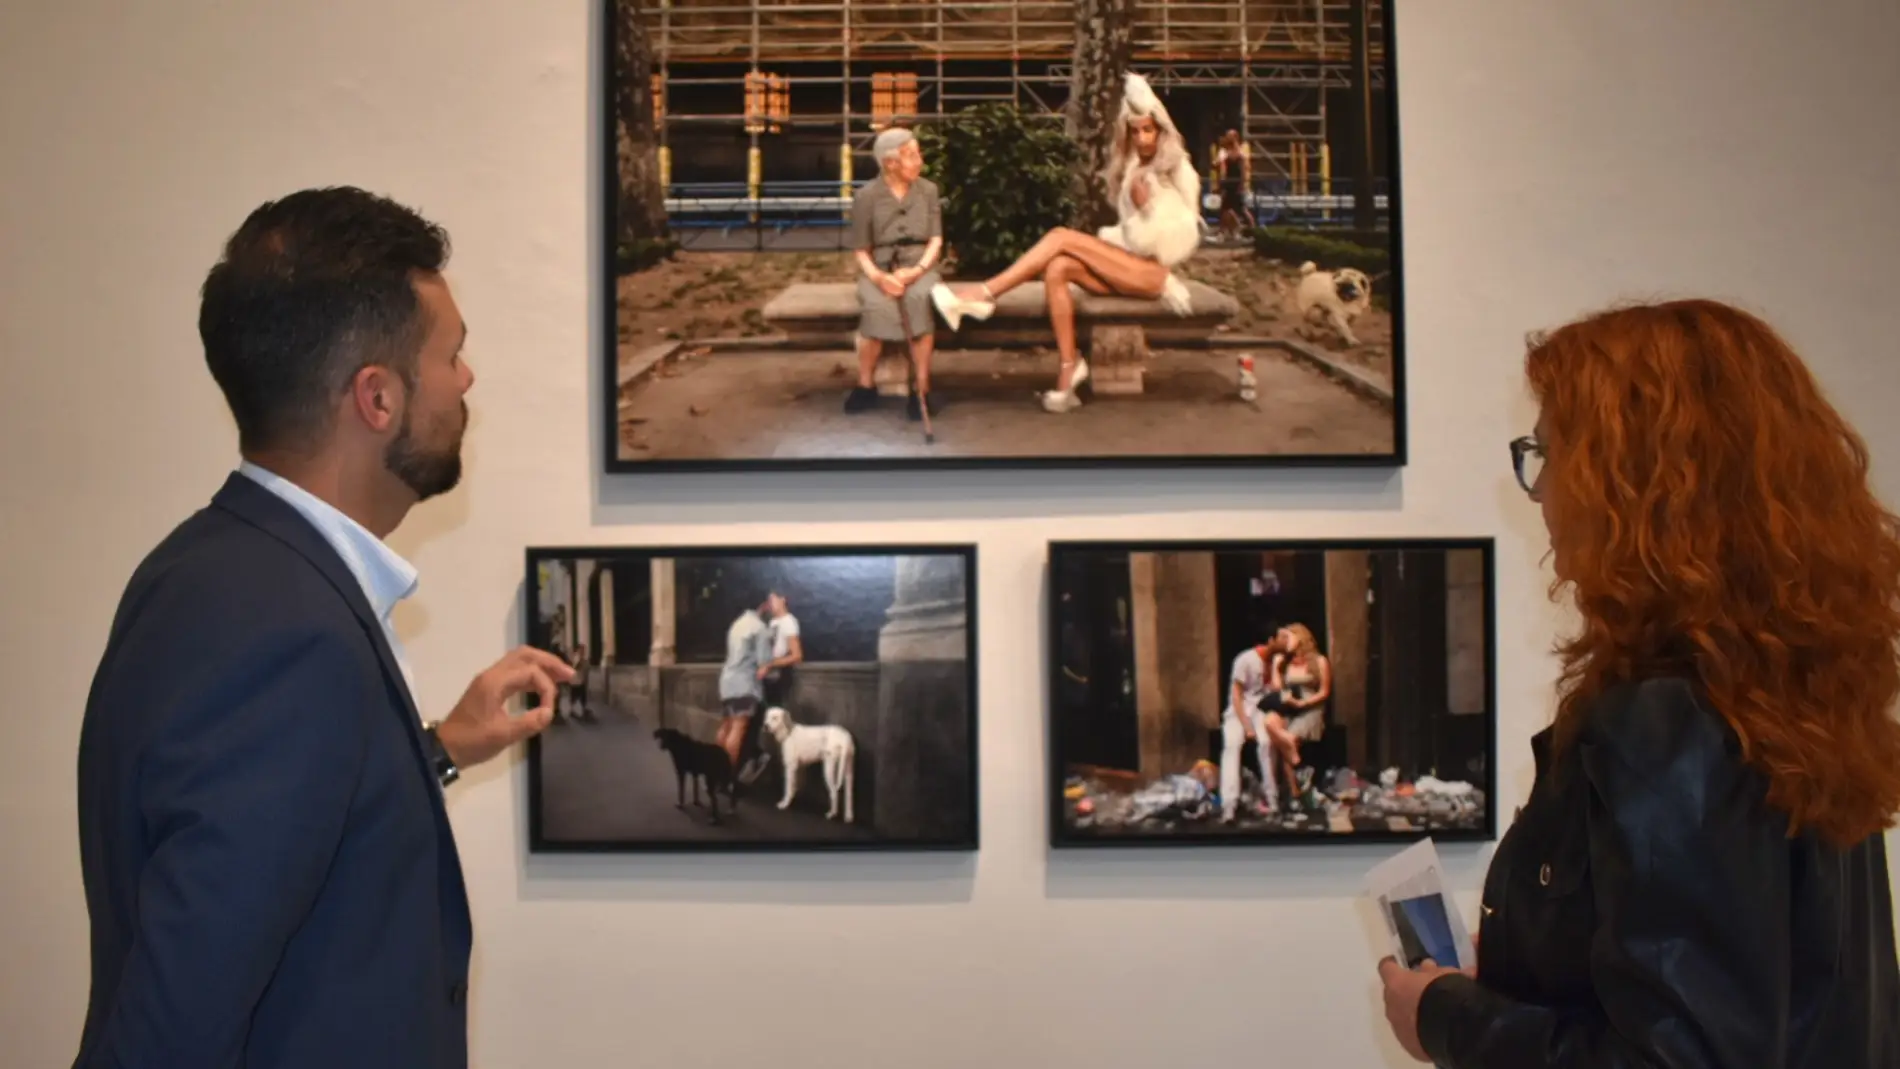  La Asunción acoge hasta el 30 de junio la exposición ‘Creadores de Conciencia’ que homenajea a los fotoperiodistas